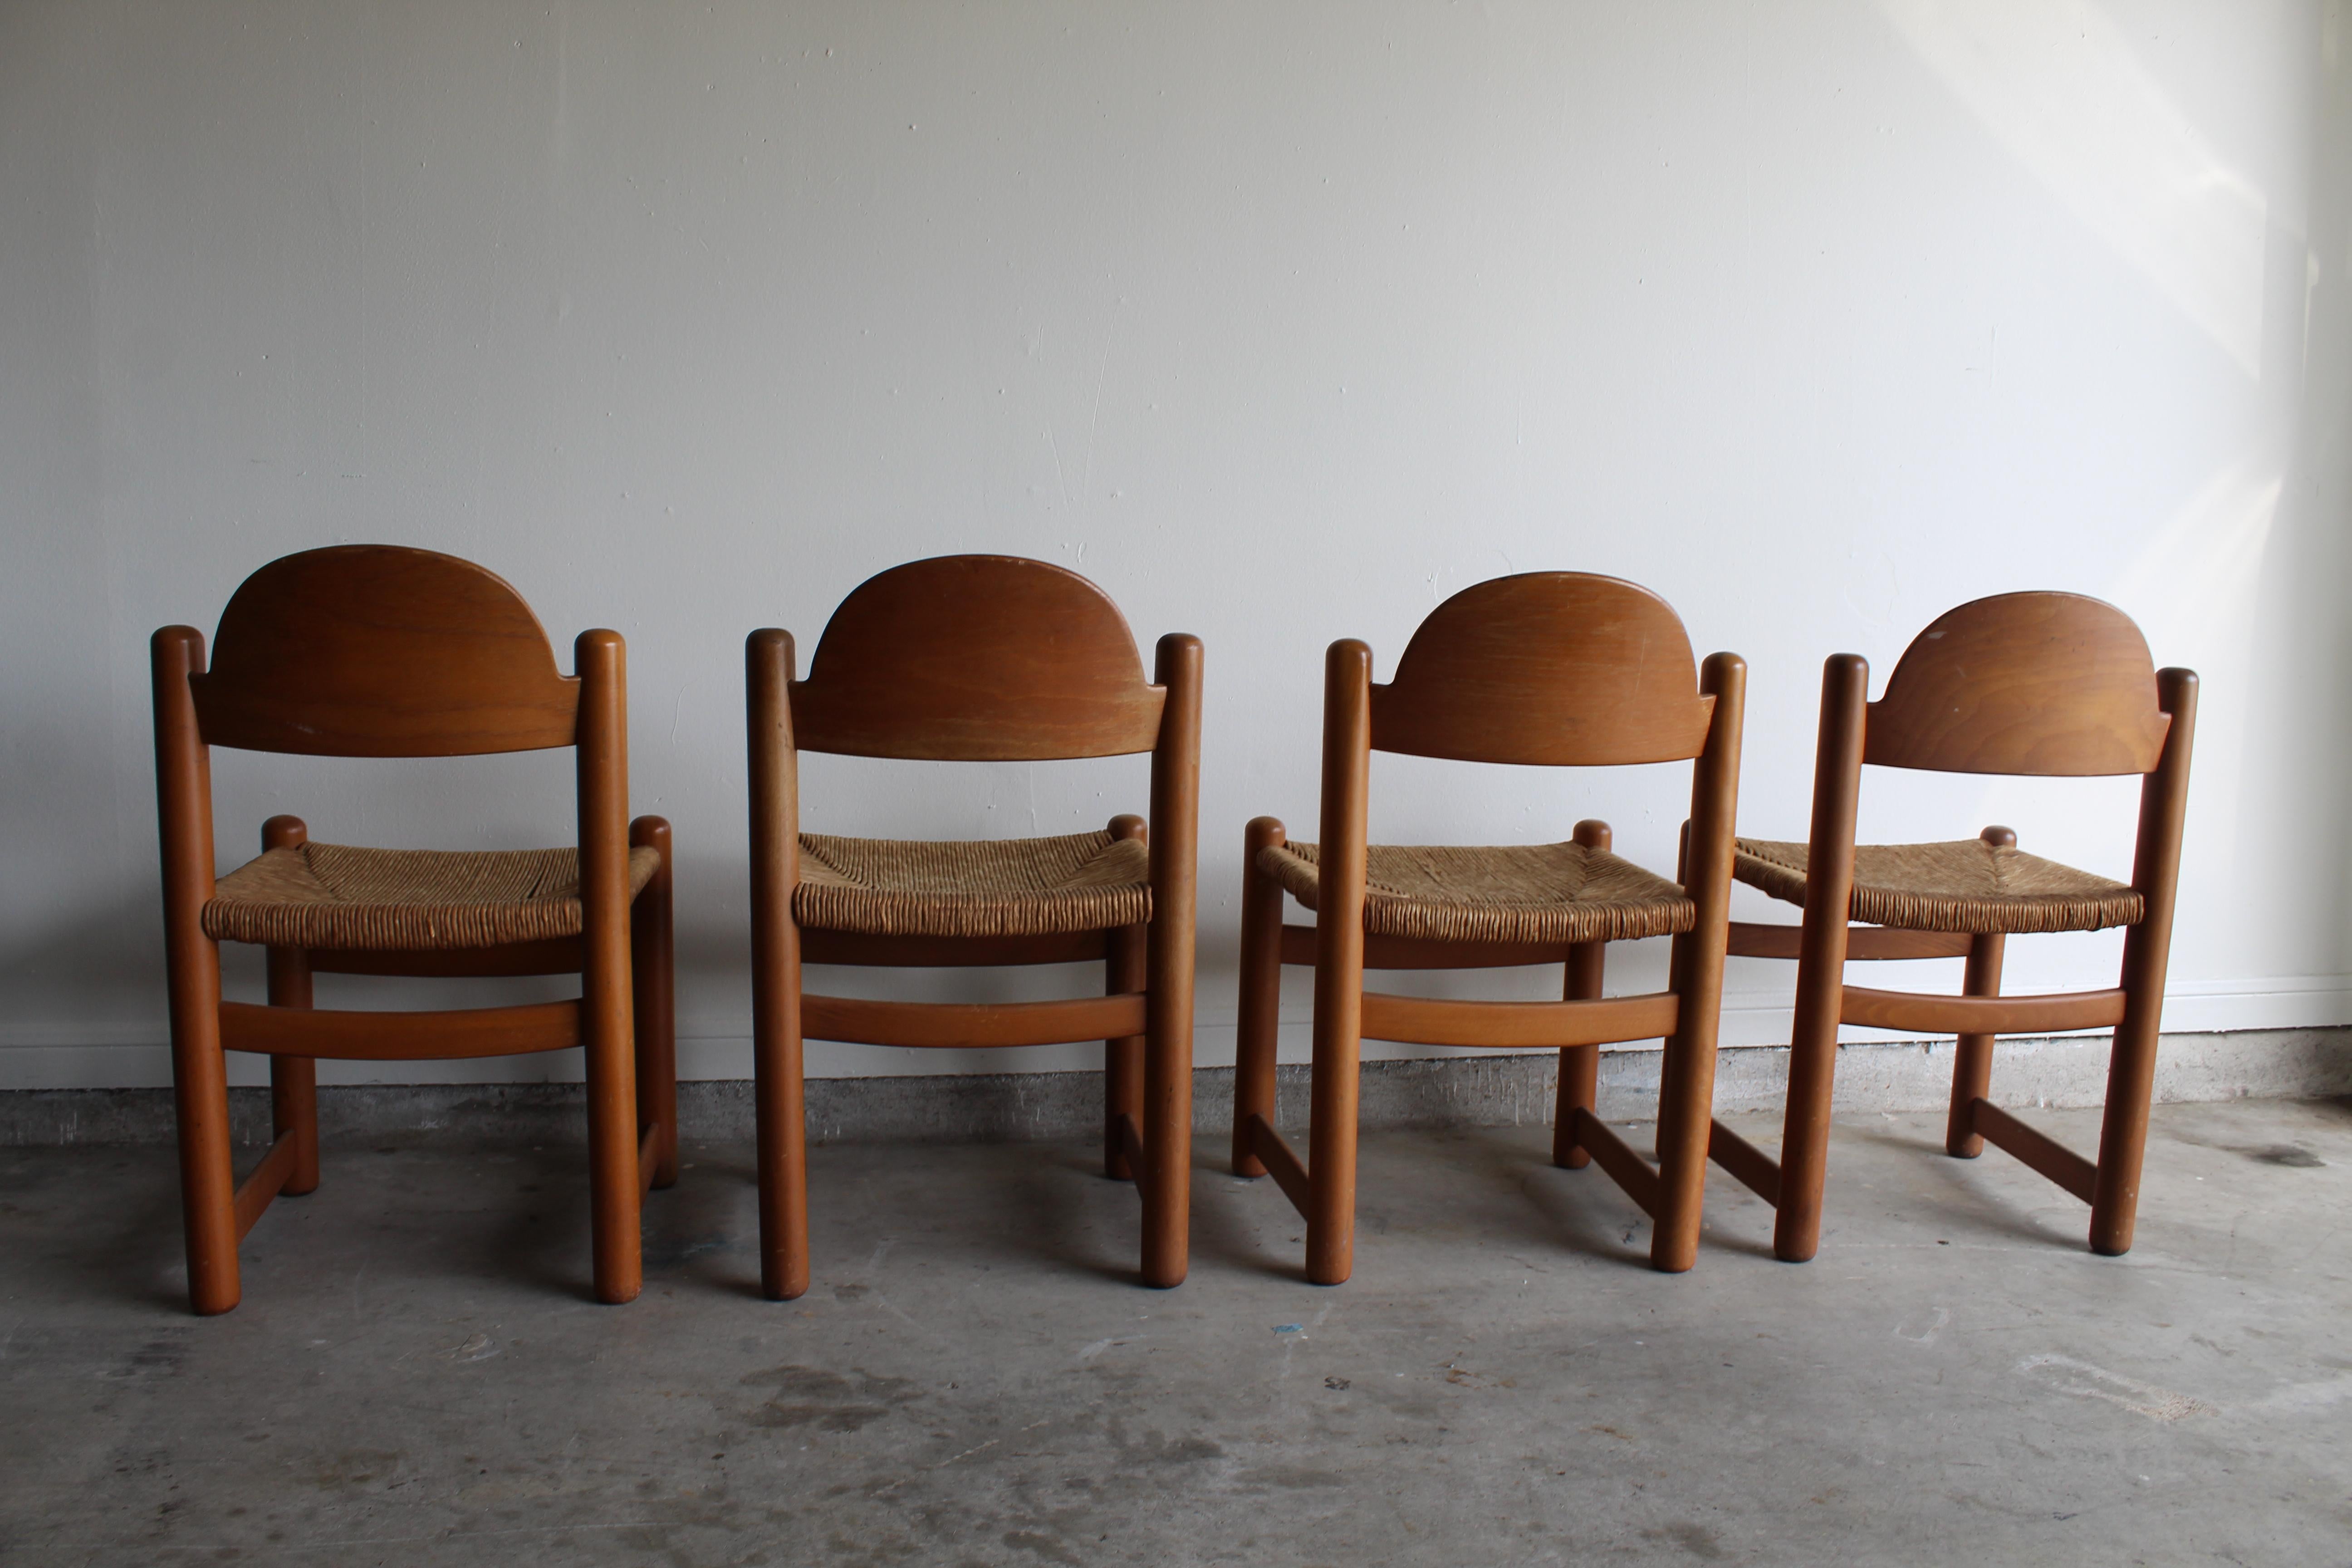 hank lowenstein chairs